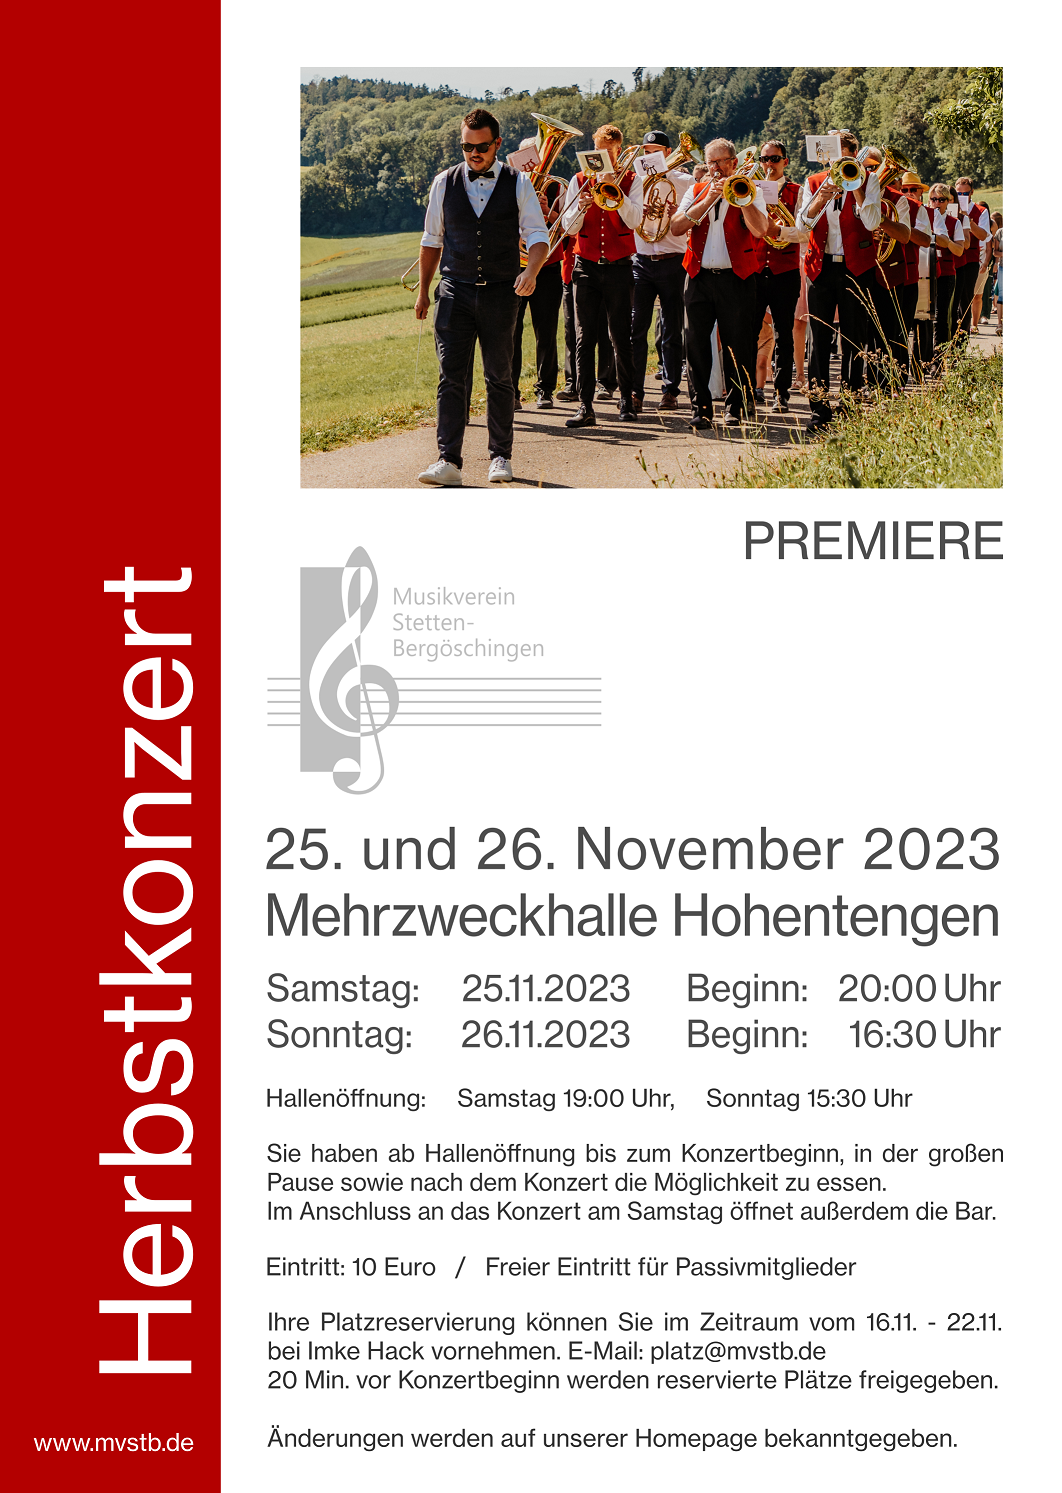 Herbstkonzert MV Stetten-Bergöschingen 2023: 25./26. November 2023, Mehrzweckhalle Hohentengen.